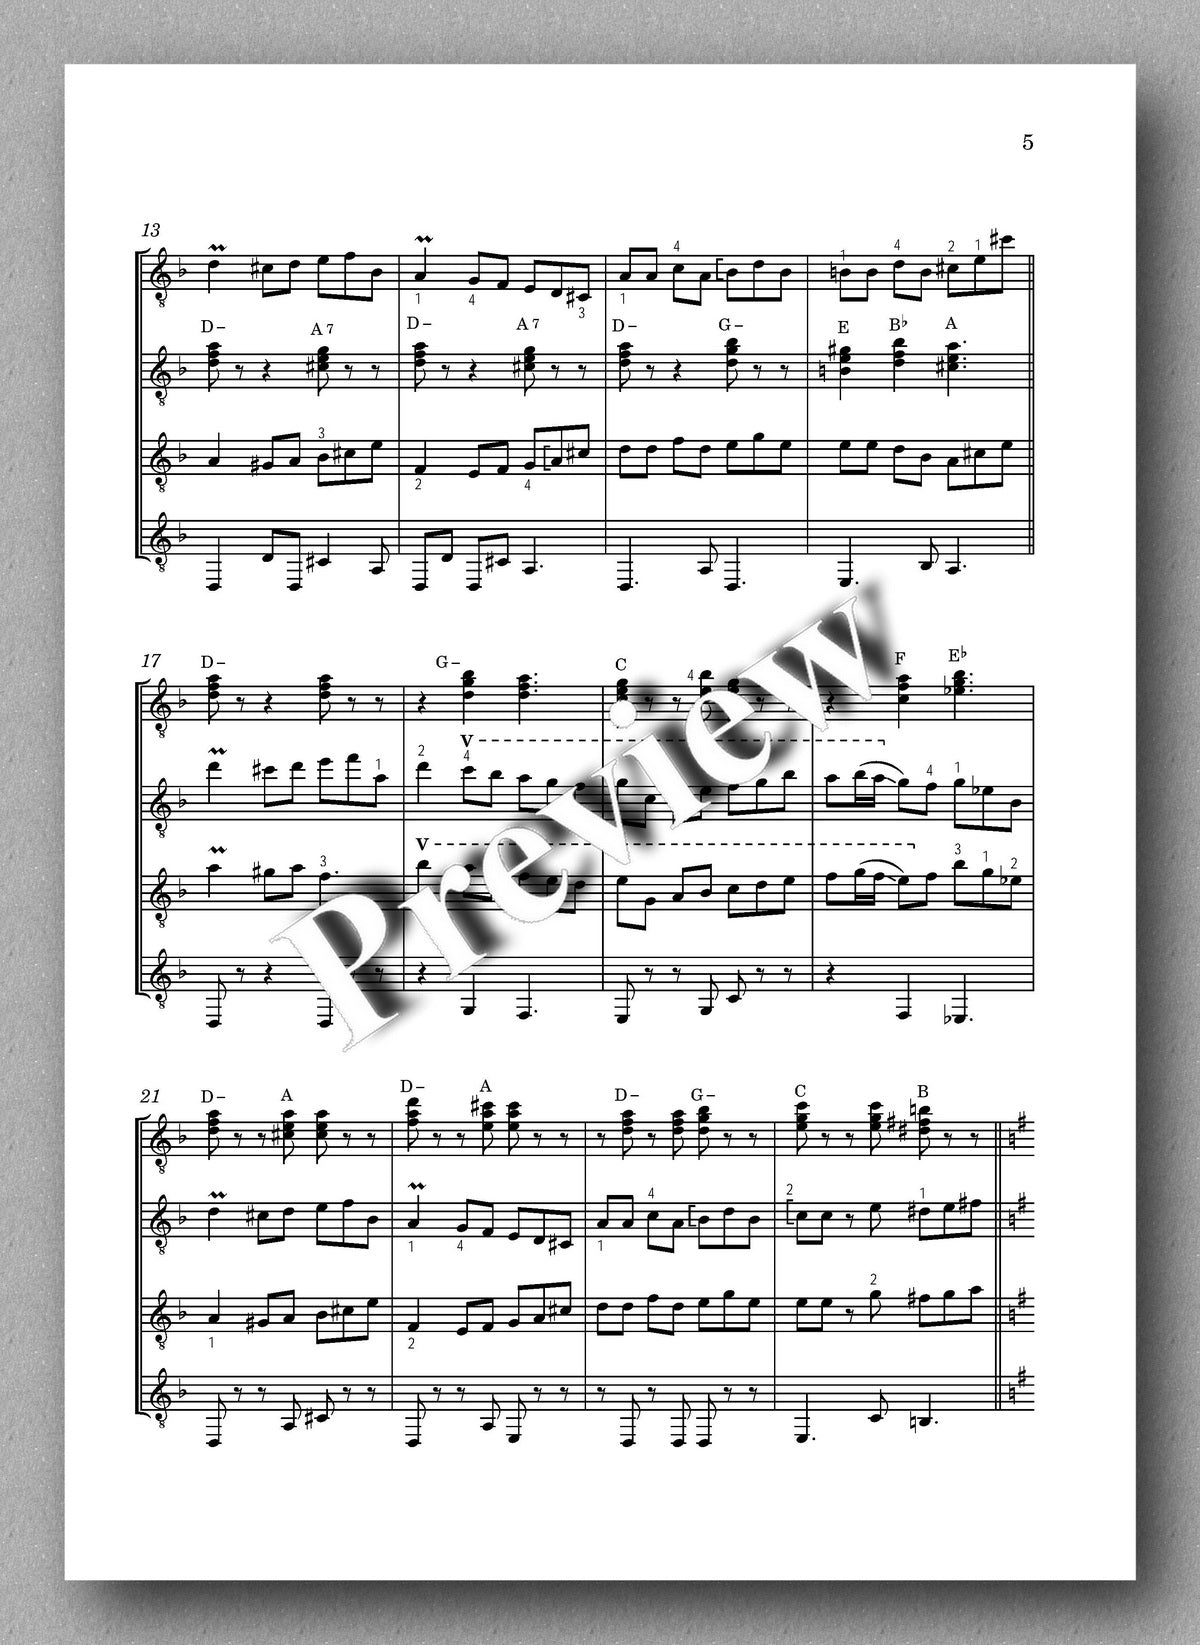 Rachenitca by Plamen Petrov - preview of the music score 2